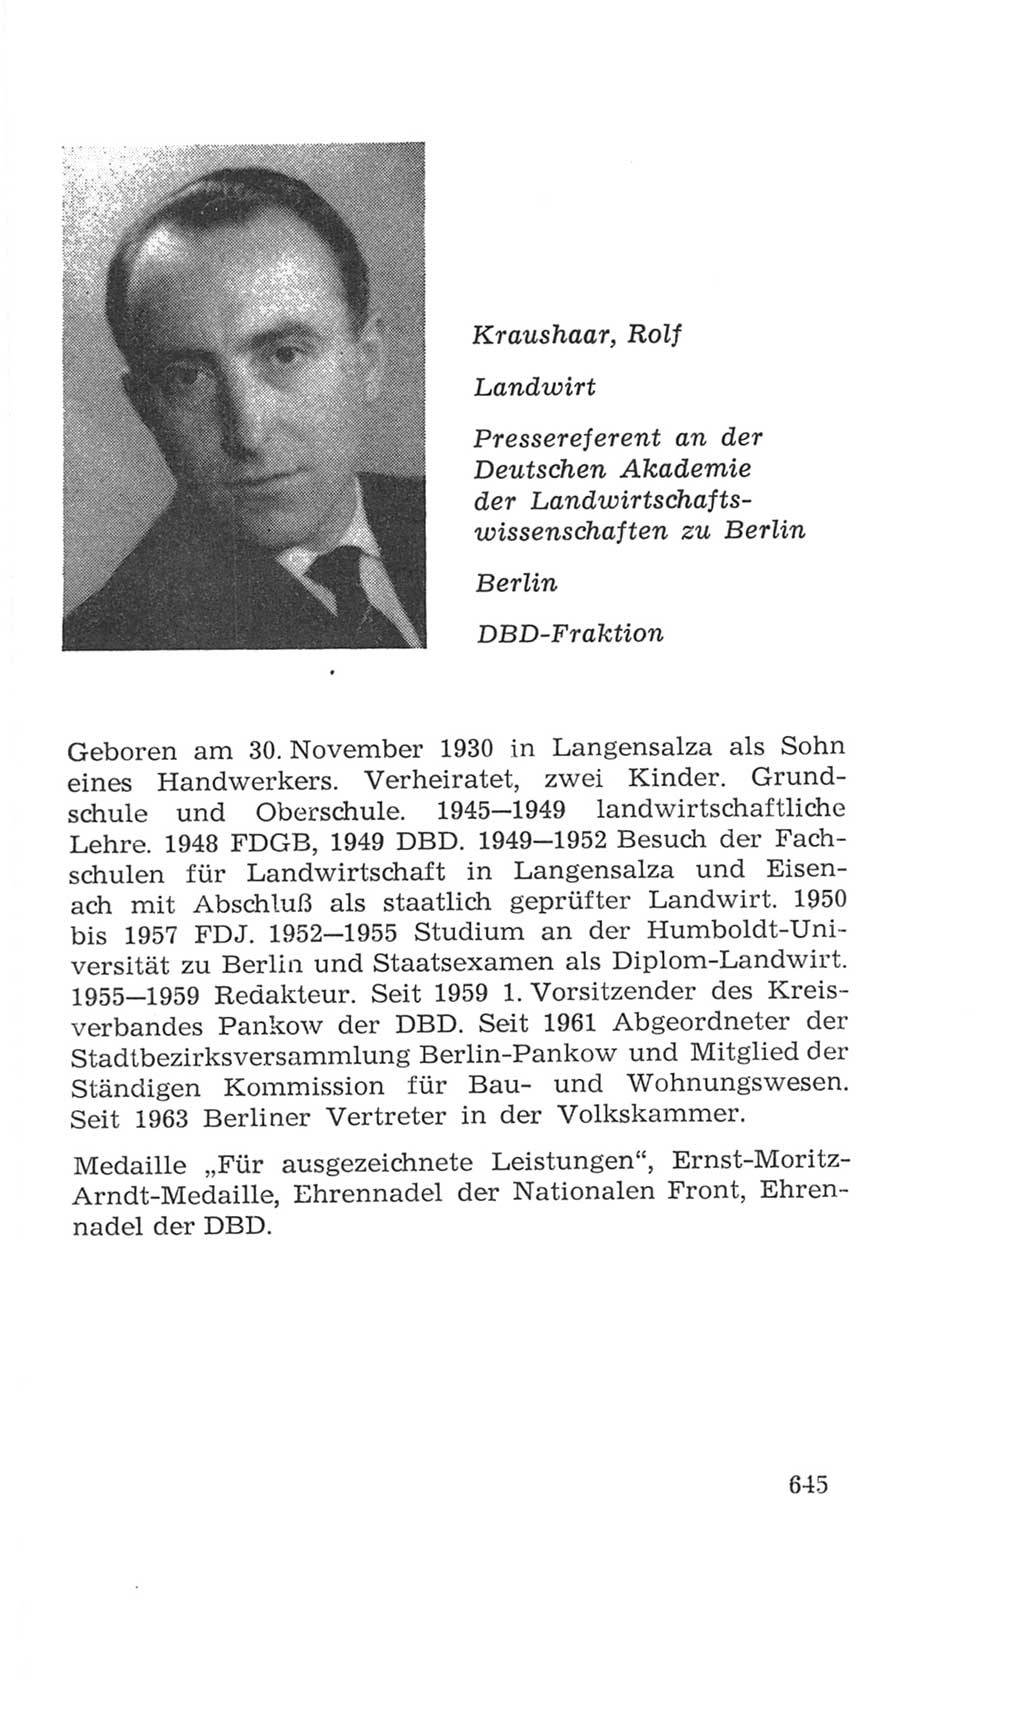 Volkskammer (VK) der Deutschen Demokratischen Republik (DDR), 4. Wahlperiode 1963-1967, Seite 645 (VK. DDR 4. WP. 1963-1967, S. 645)